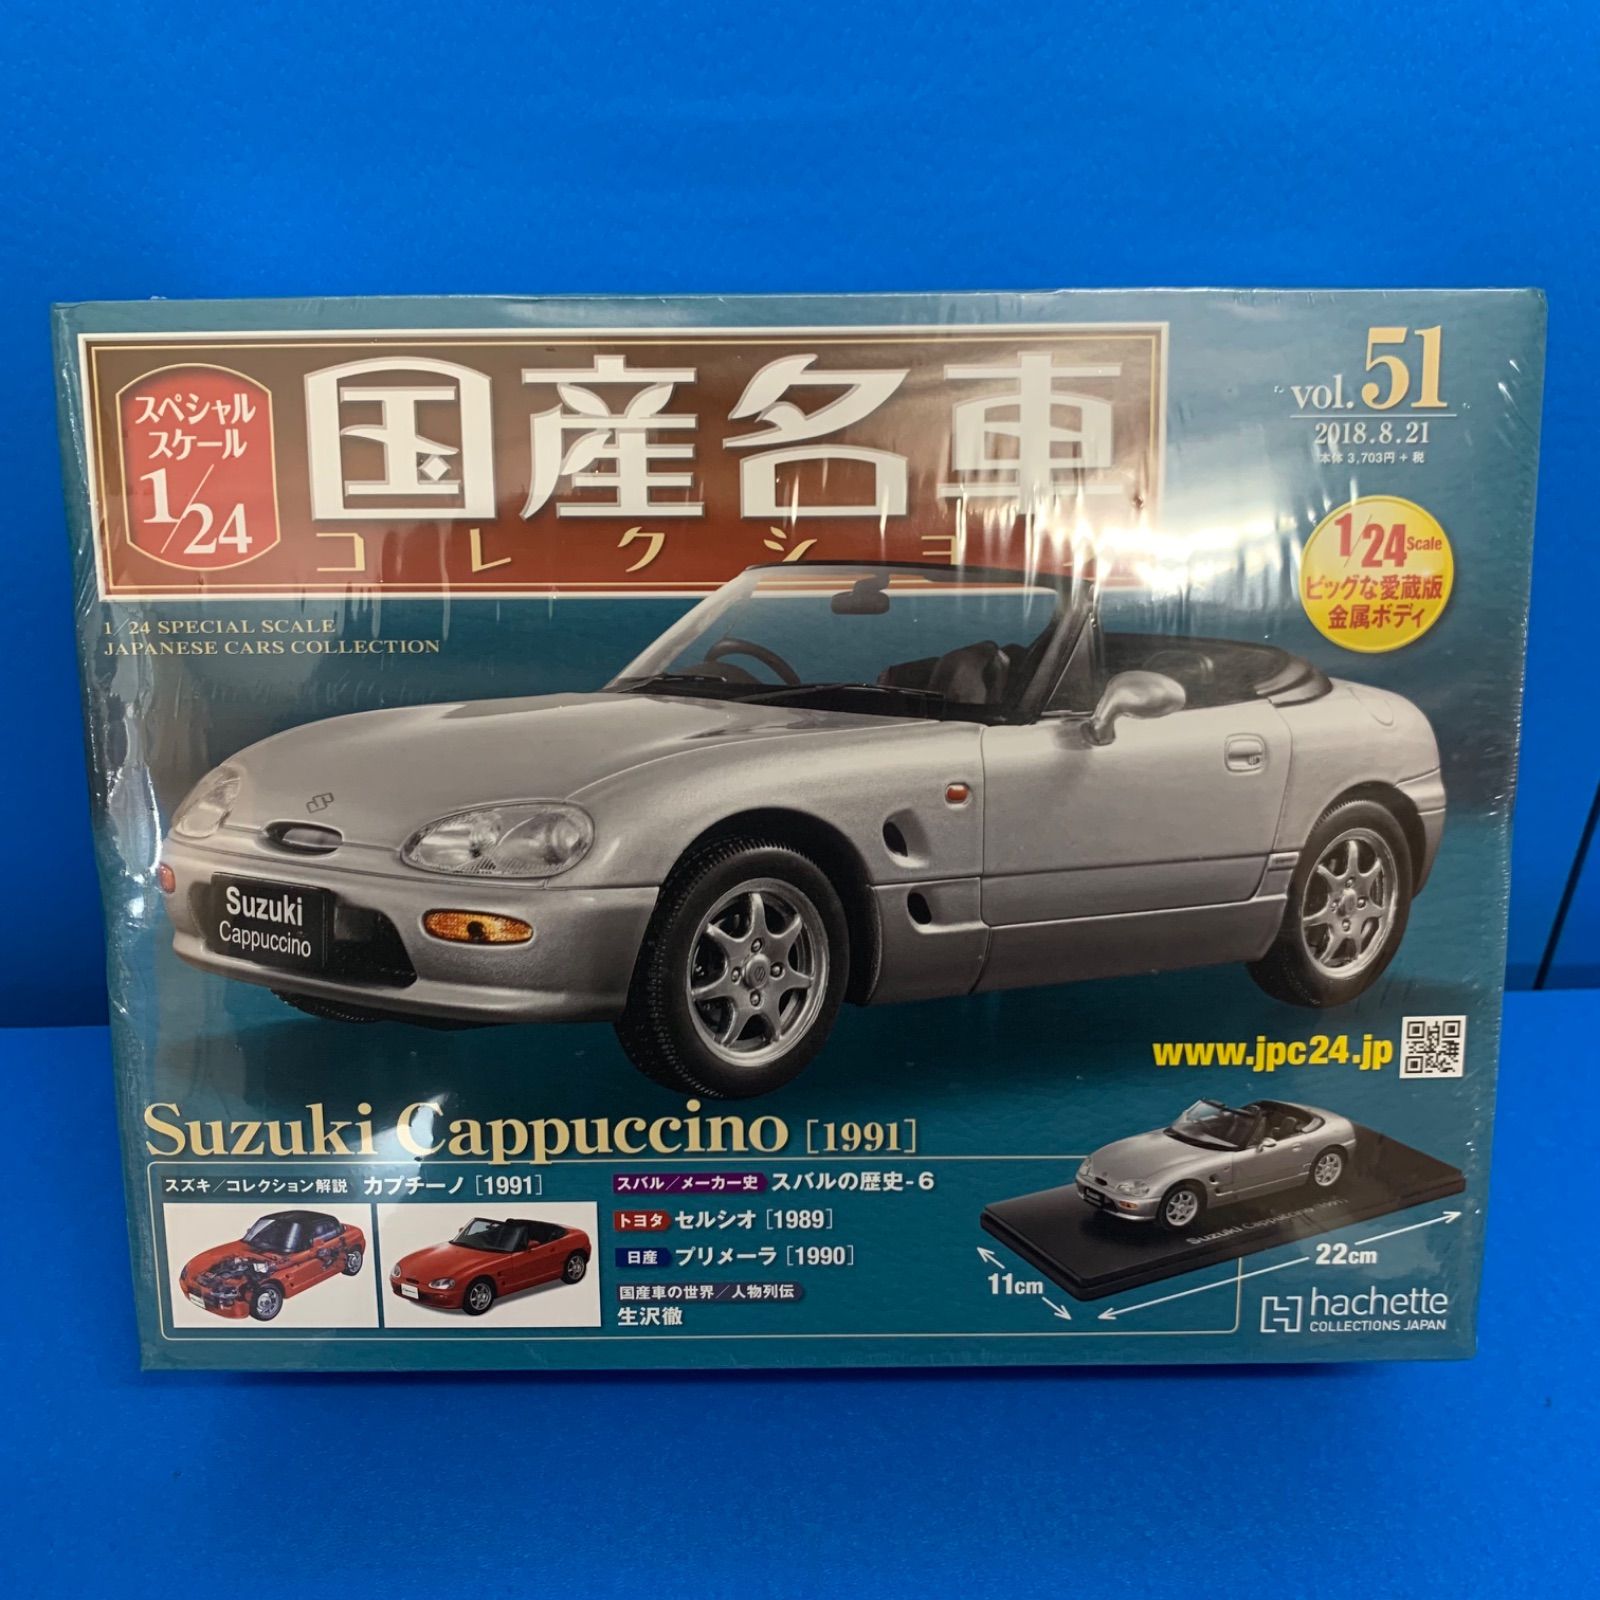 国産名車コレクション 1/24 スズキ カプチーノ 1991 vol.51 - だんだん